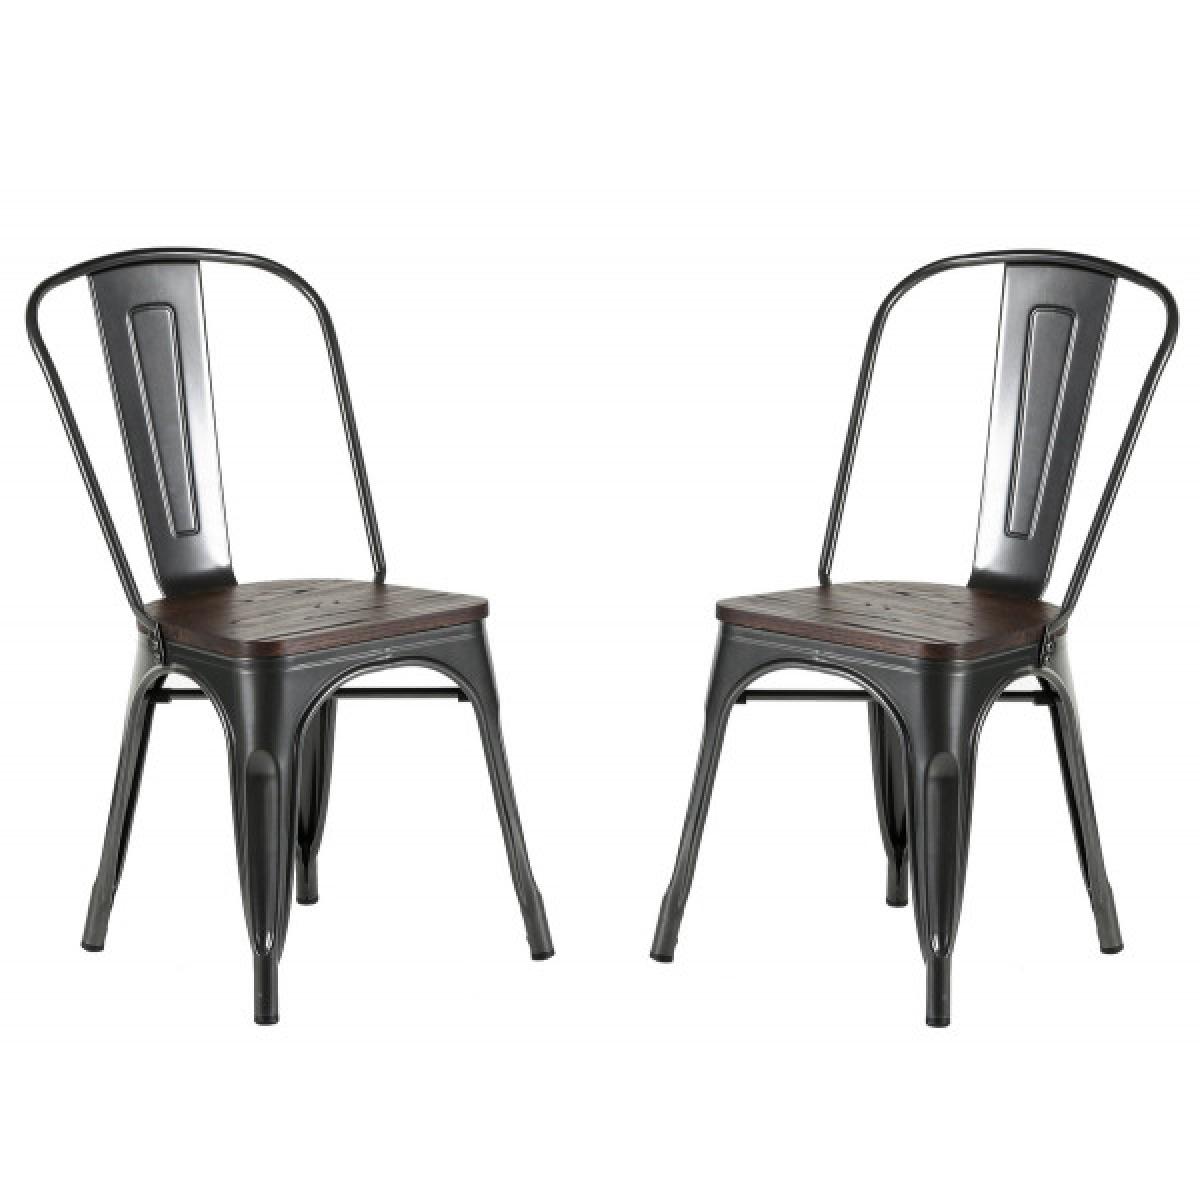 Mathi Design - NEVADA - Chaise design de repas acier gris et bois foncé - Chaises